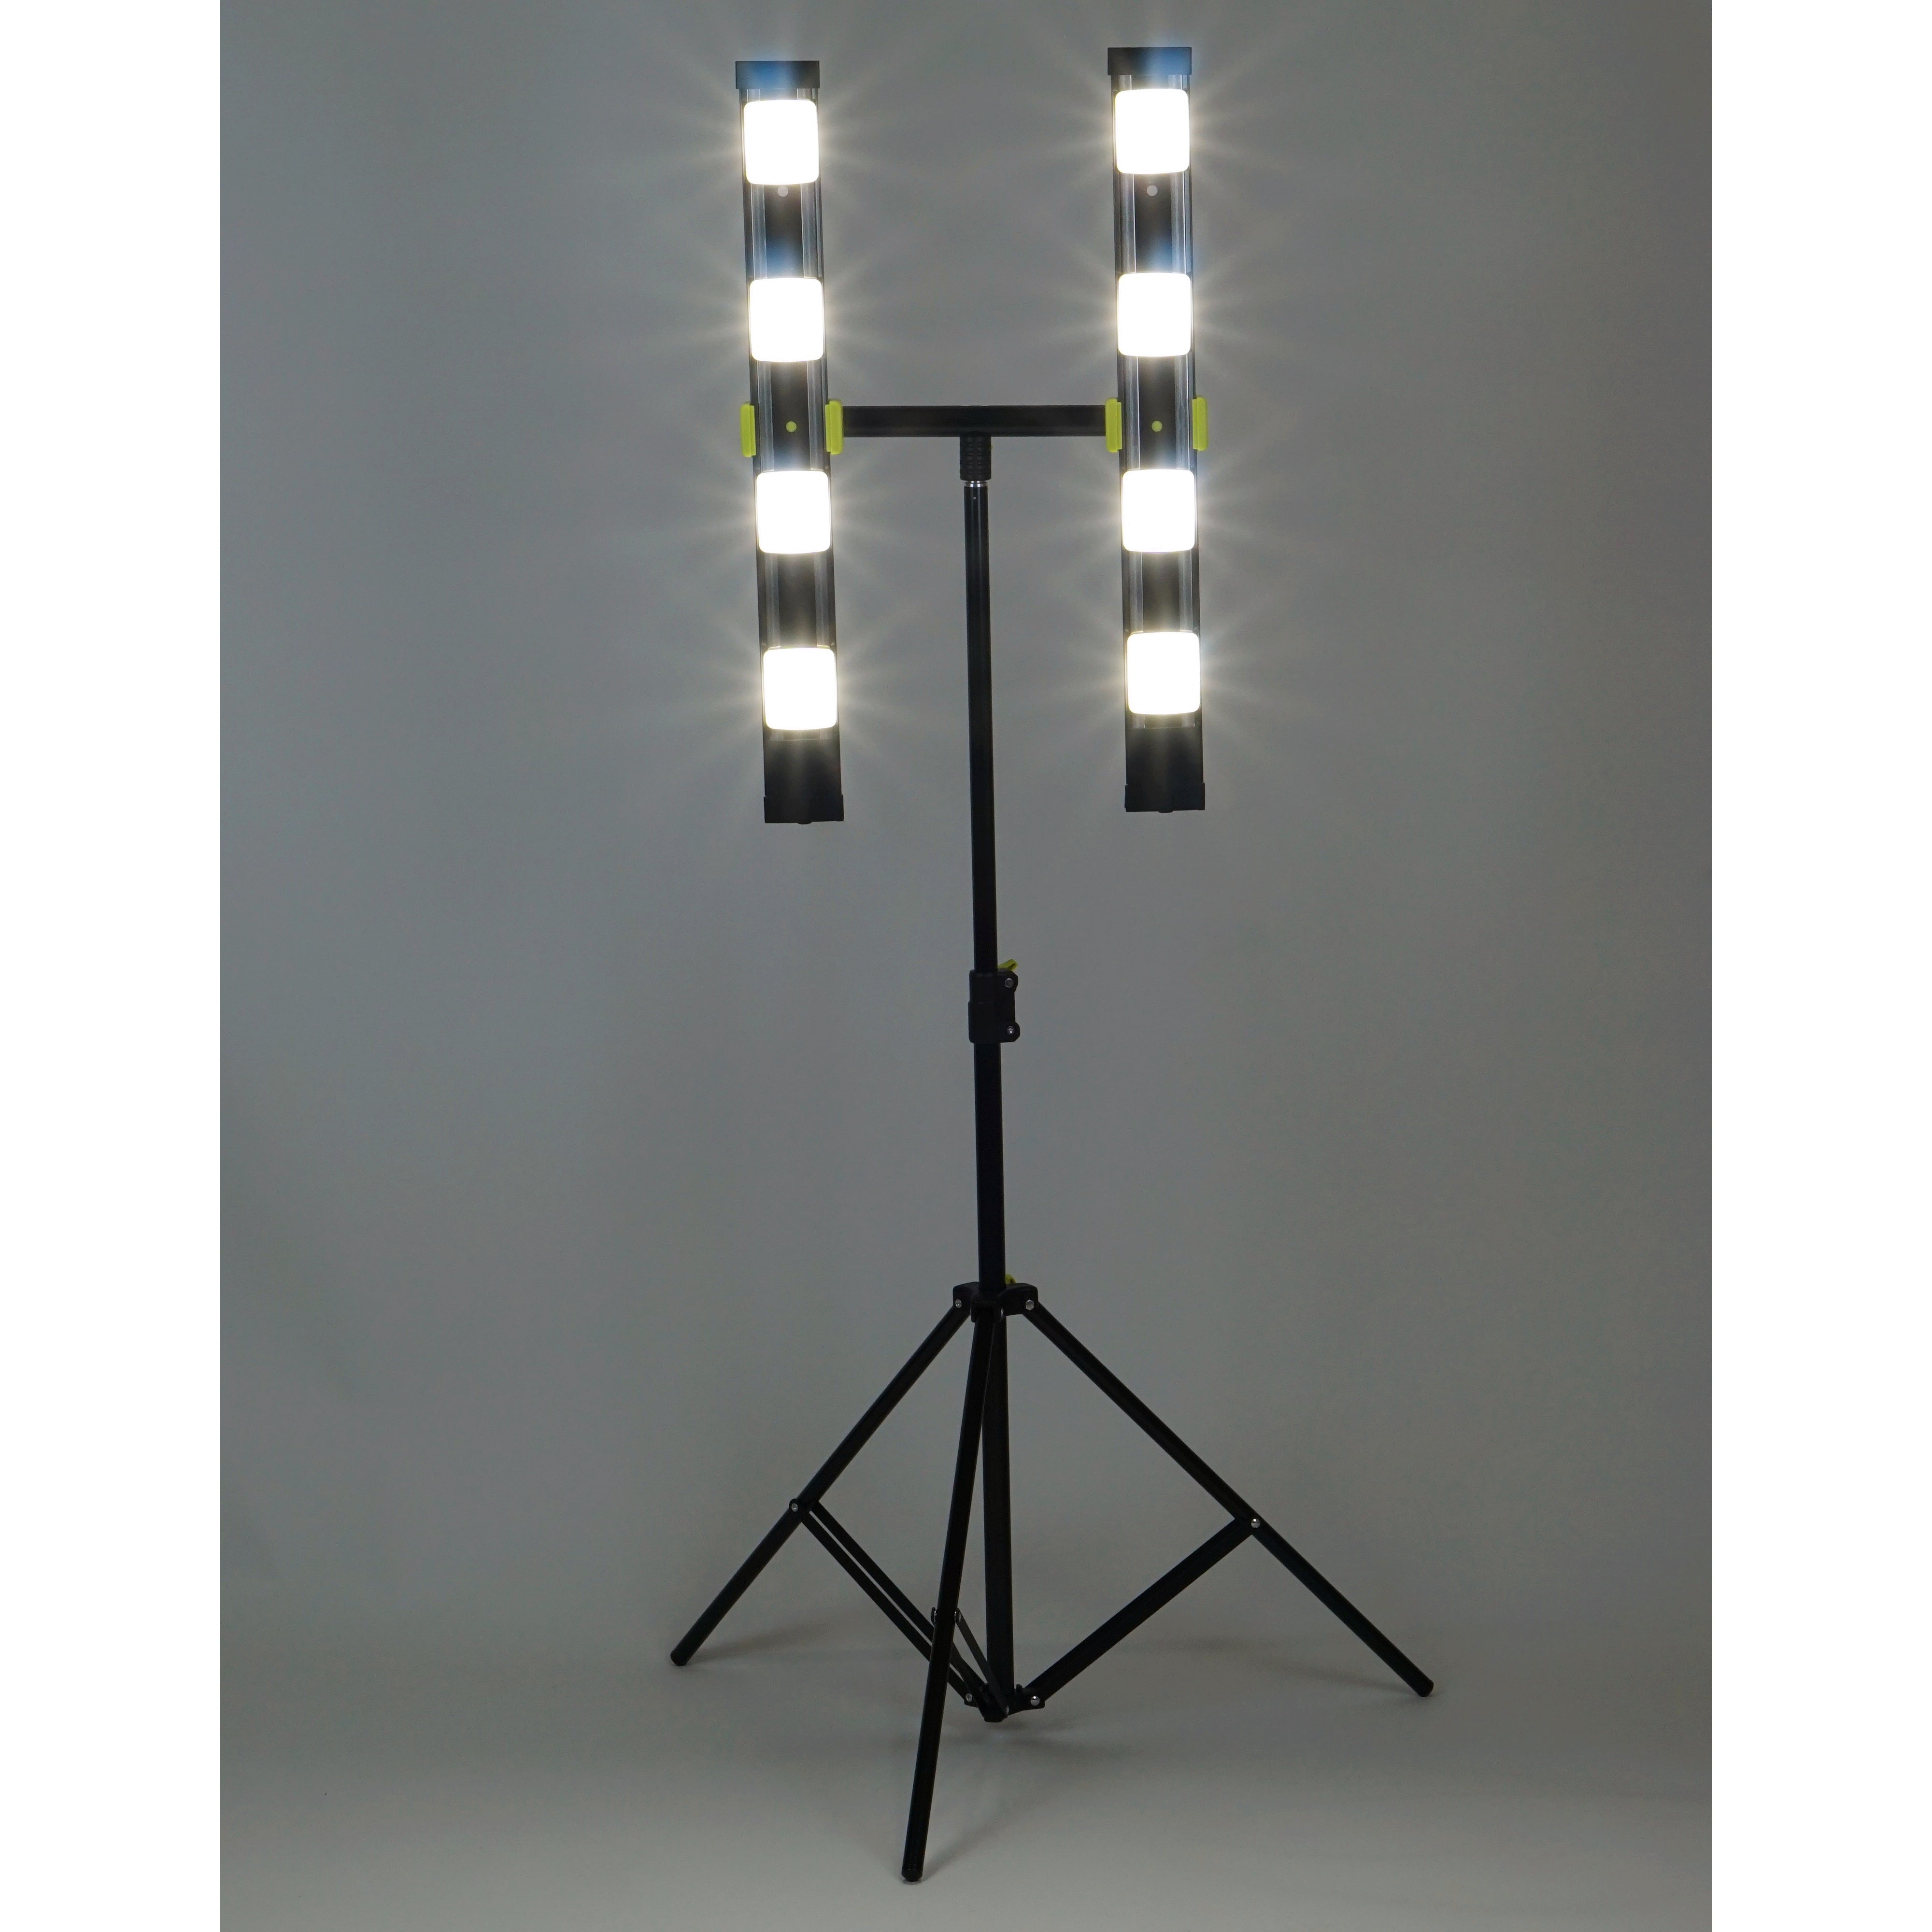 7200 Lumen Portable LED Work Light/Stand Light – 24″ Black